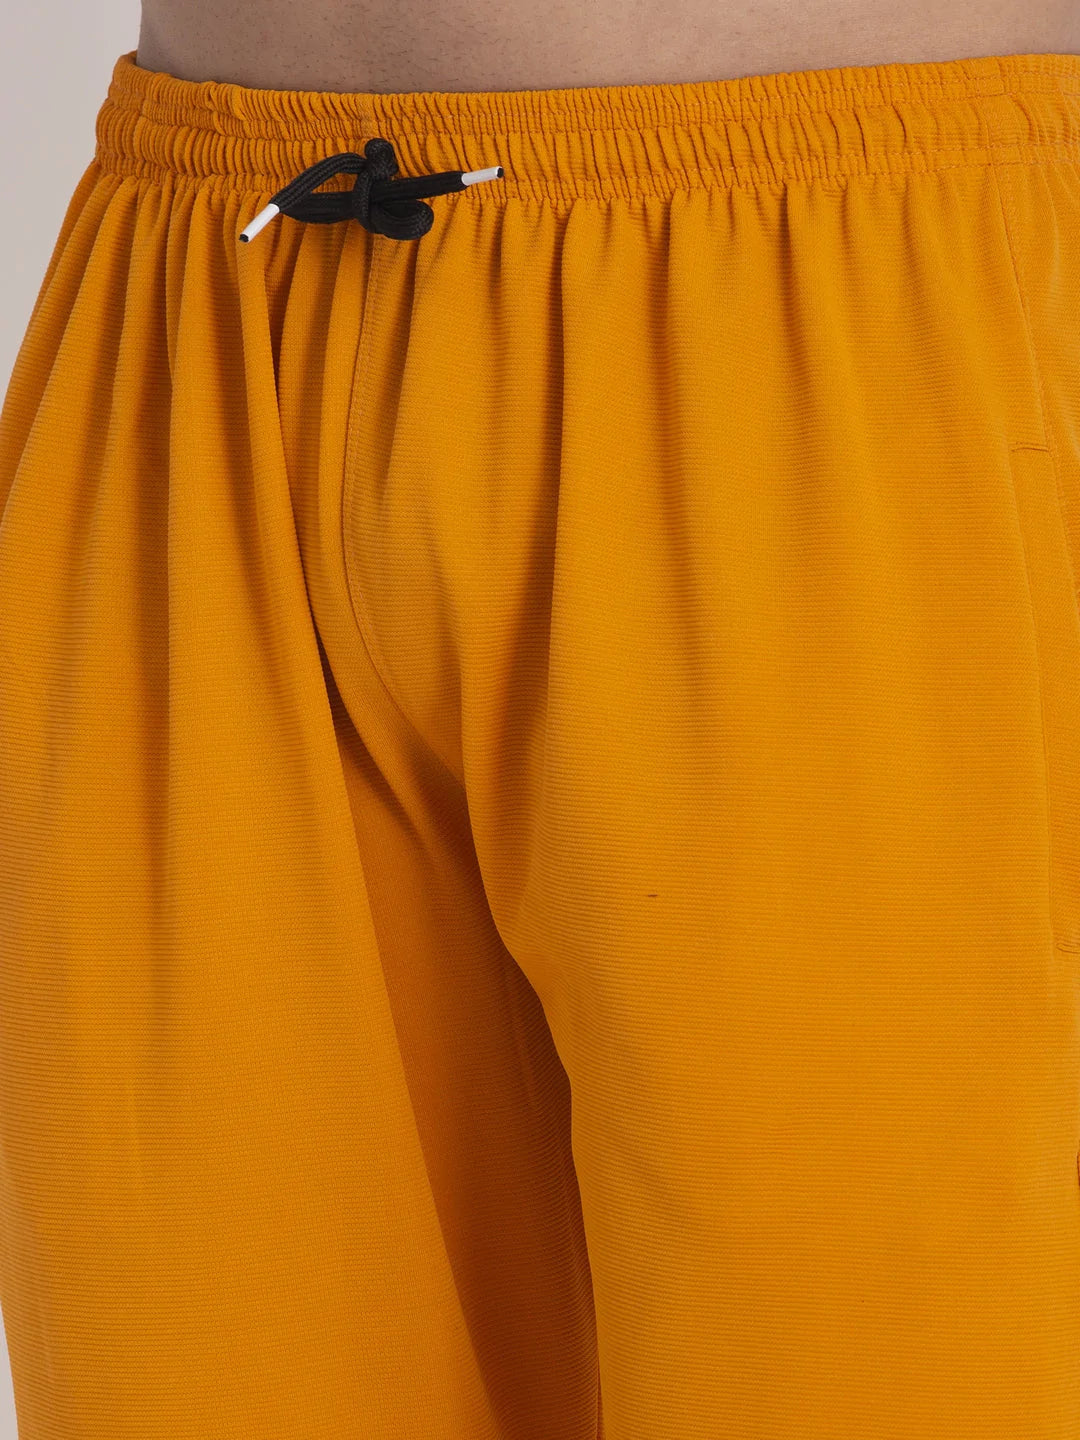 Jainish Men's Mustard Solid Track Pants ( JOG 014Mustard )